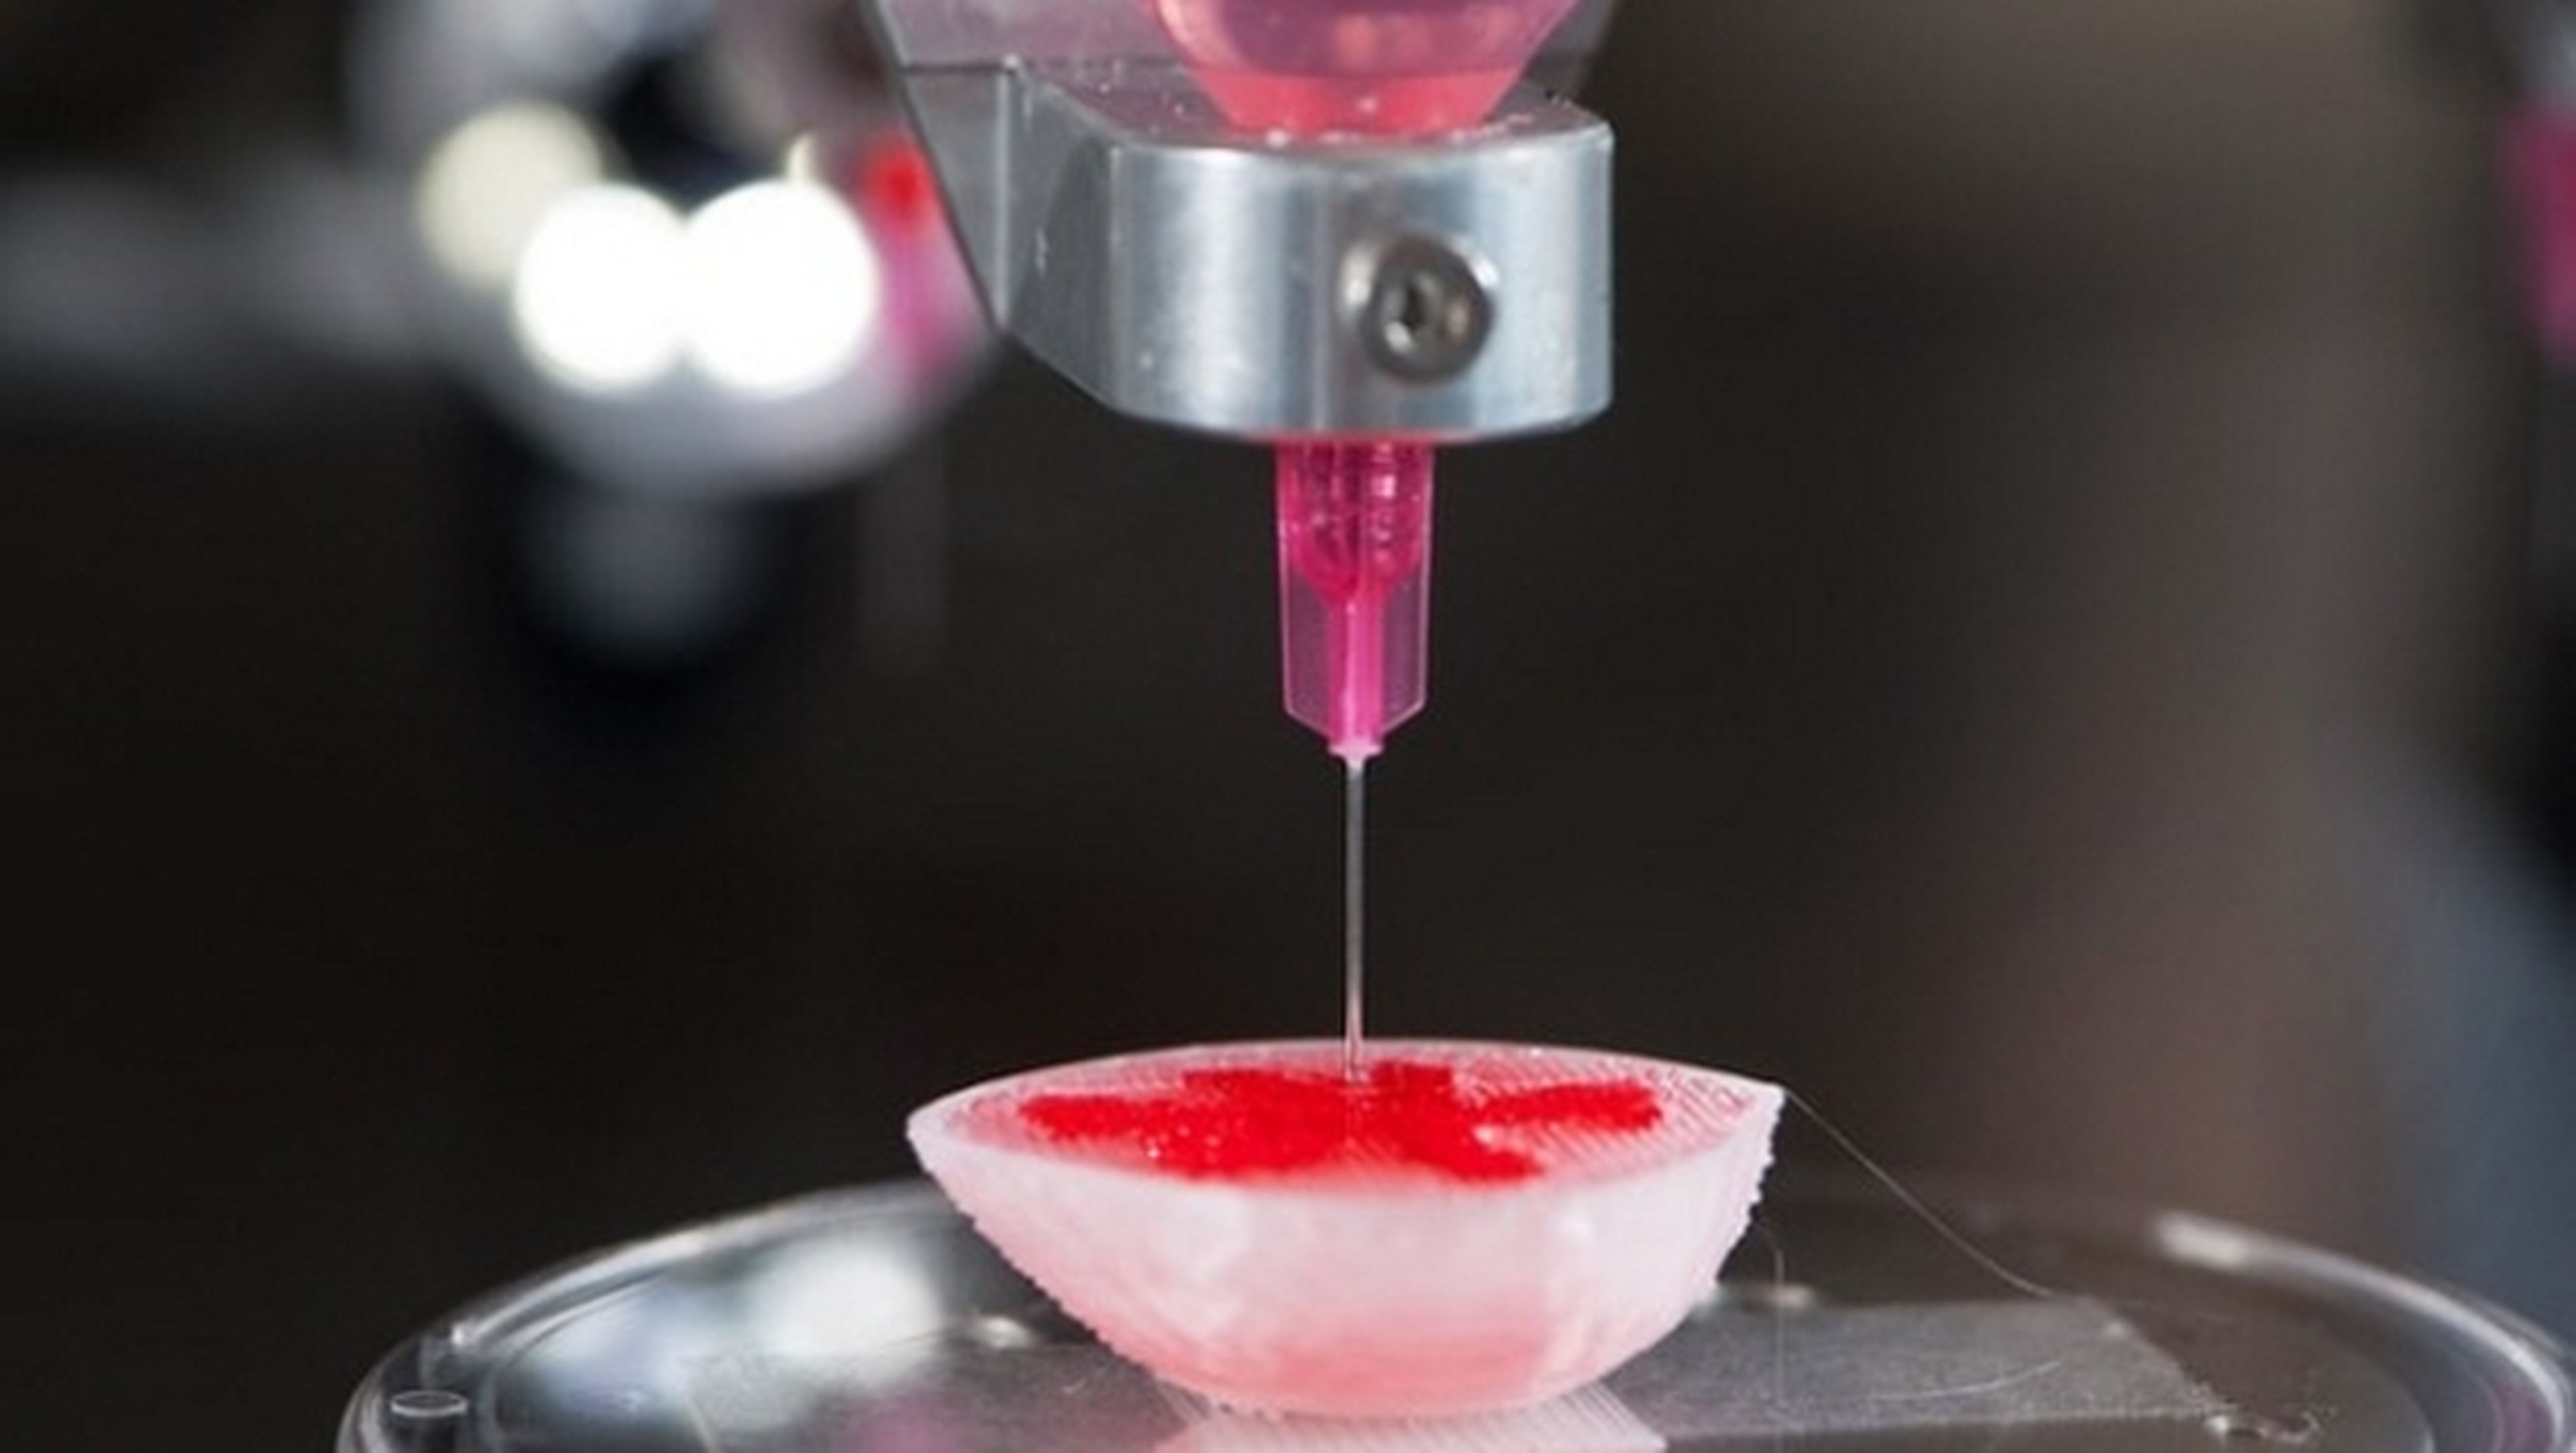 Imprimen tumores cancerígenos con impresora 3D